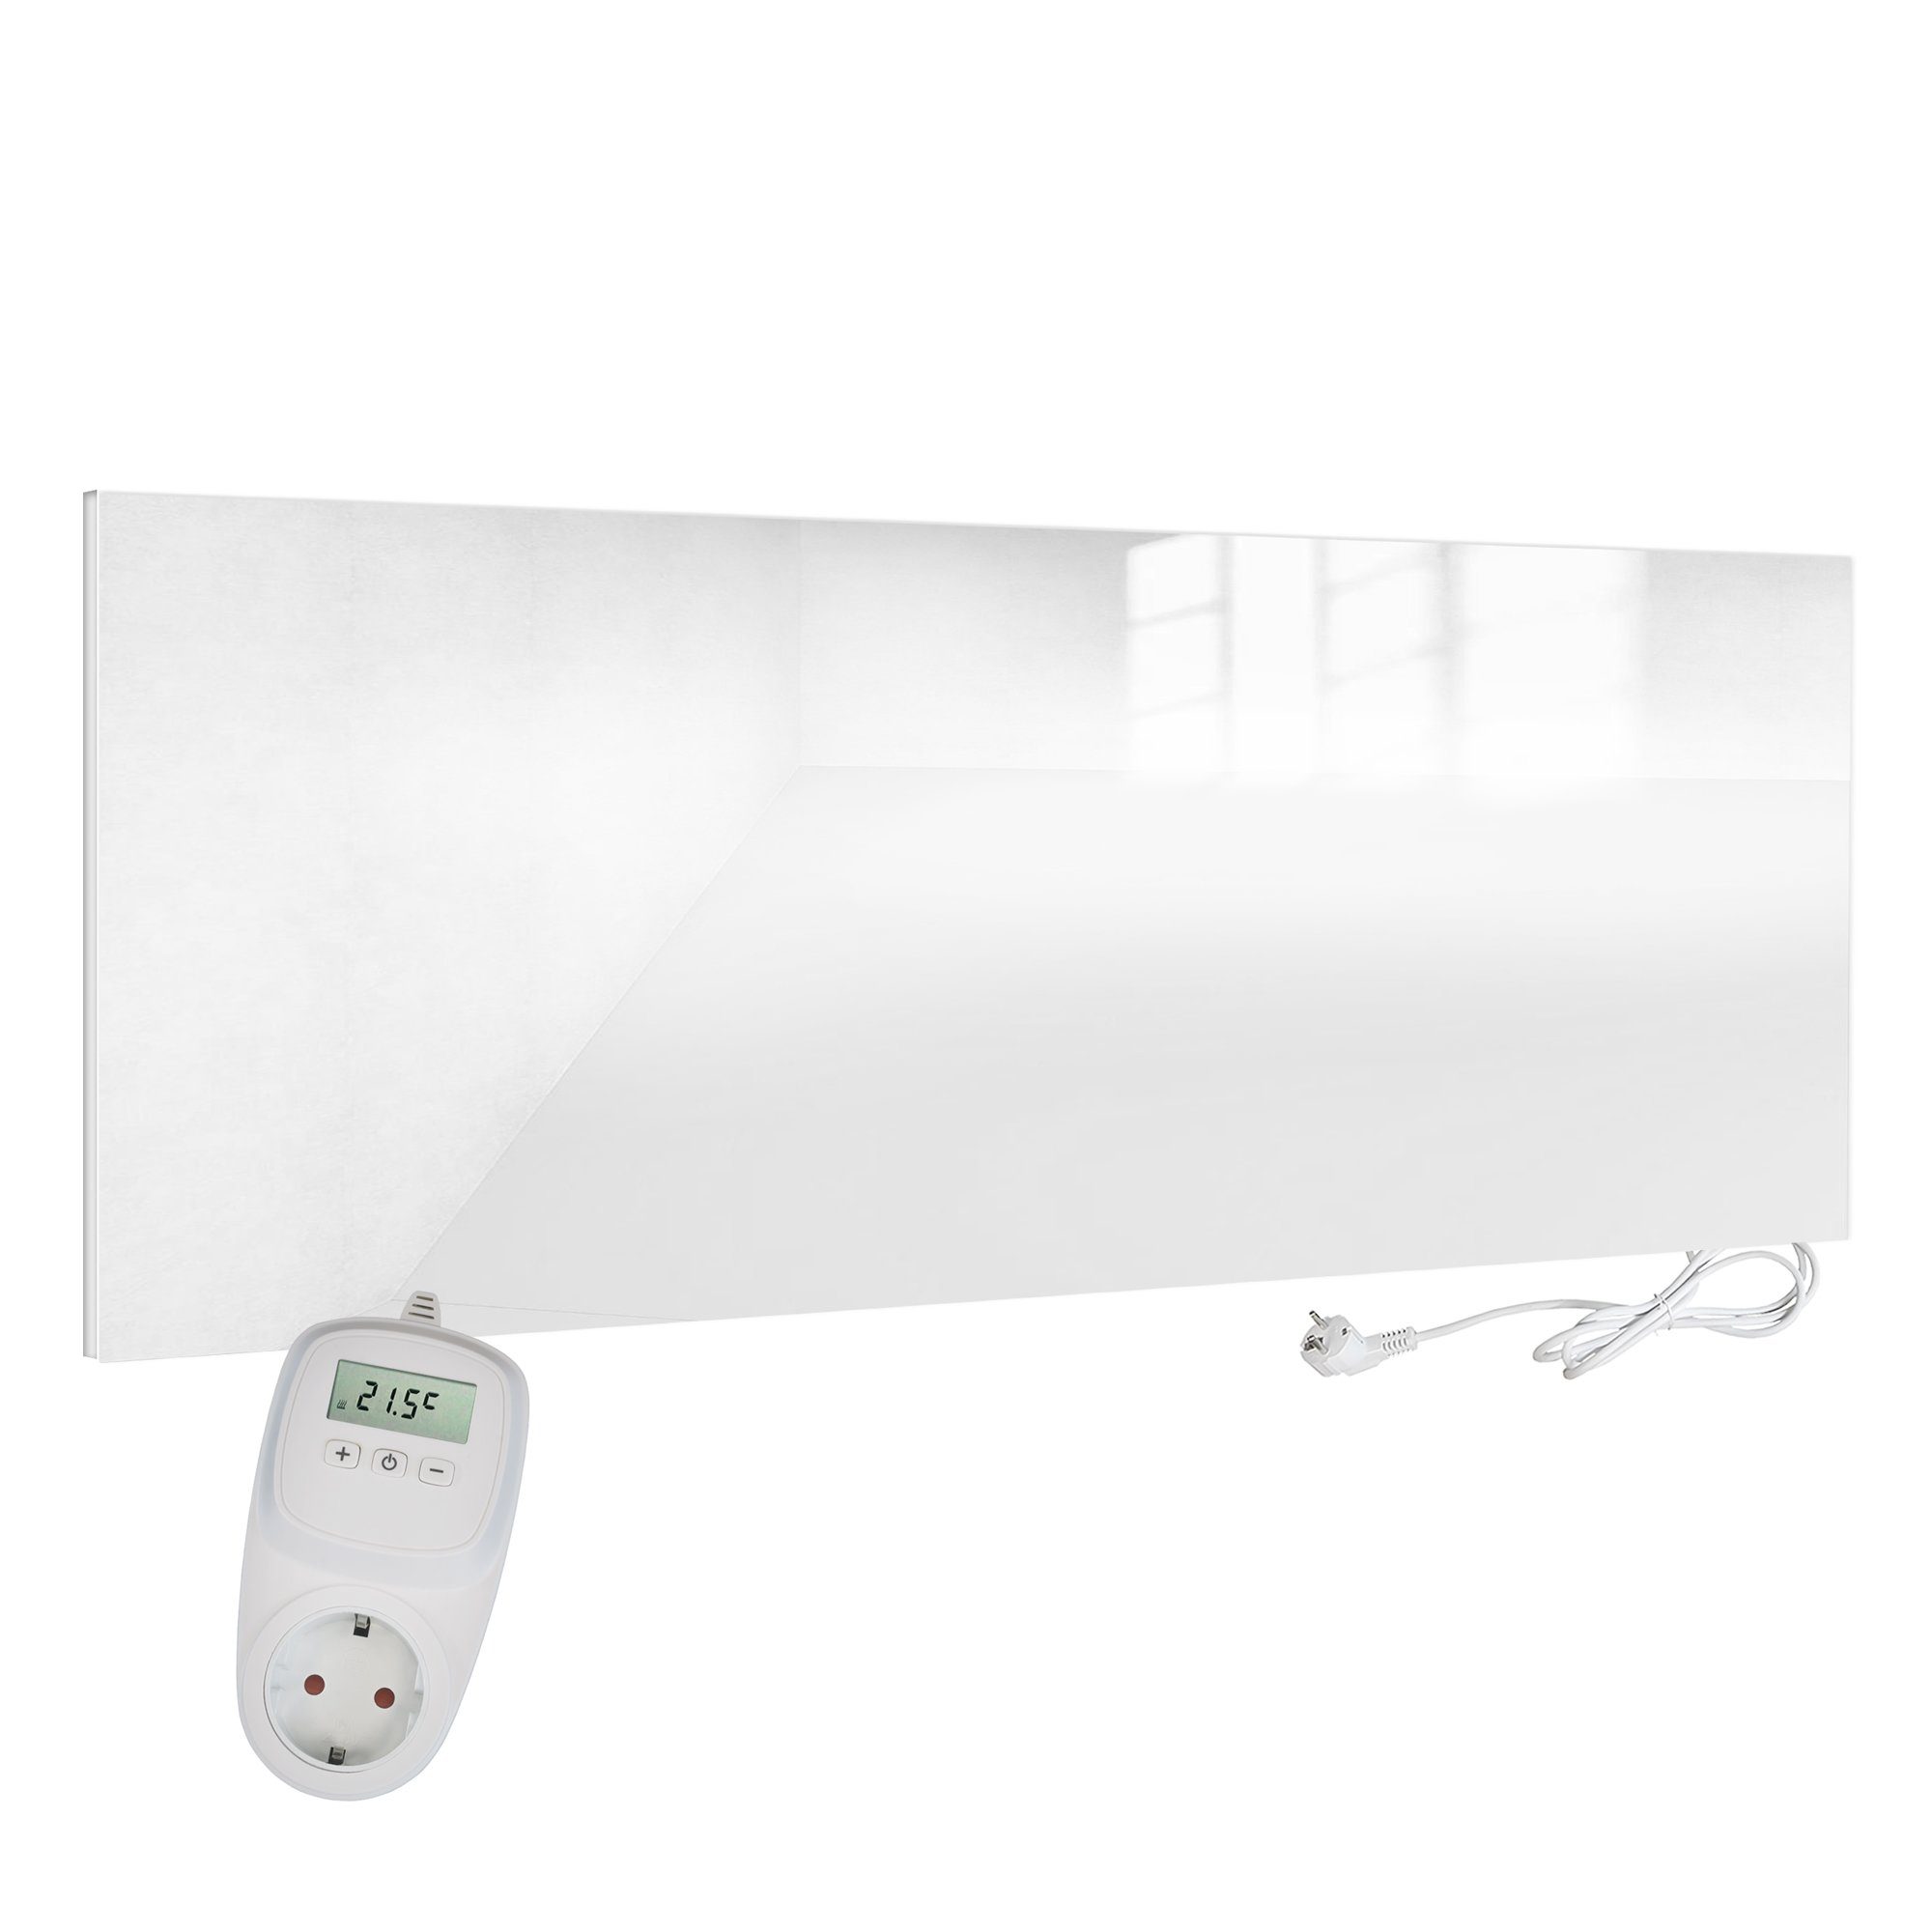 VIESTA Ein-Ausschalter TH10, 700 Thermostat mit + H700-GW TH10 weiß, Glas weiß Paneelheizkörper VIESTA Watt, H700-GW + Infrarotheizung VIESTA